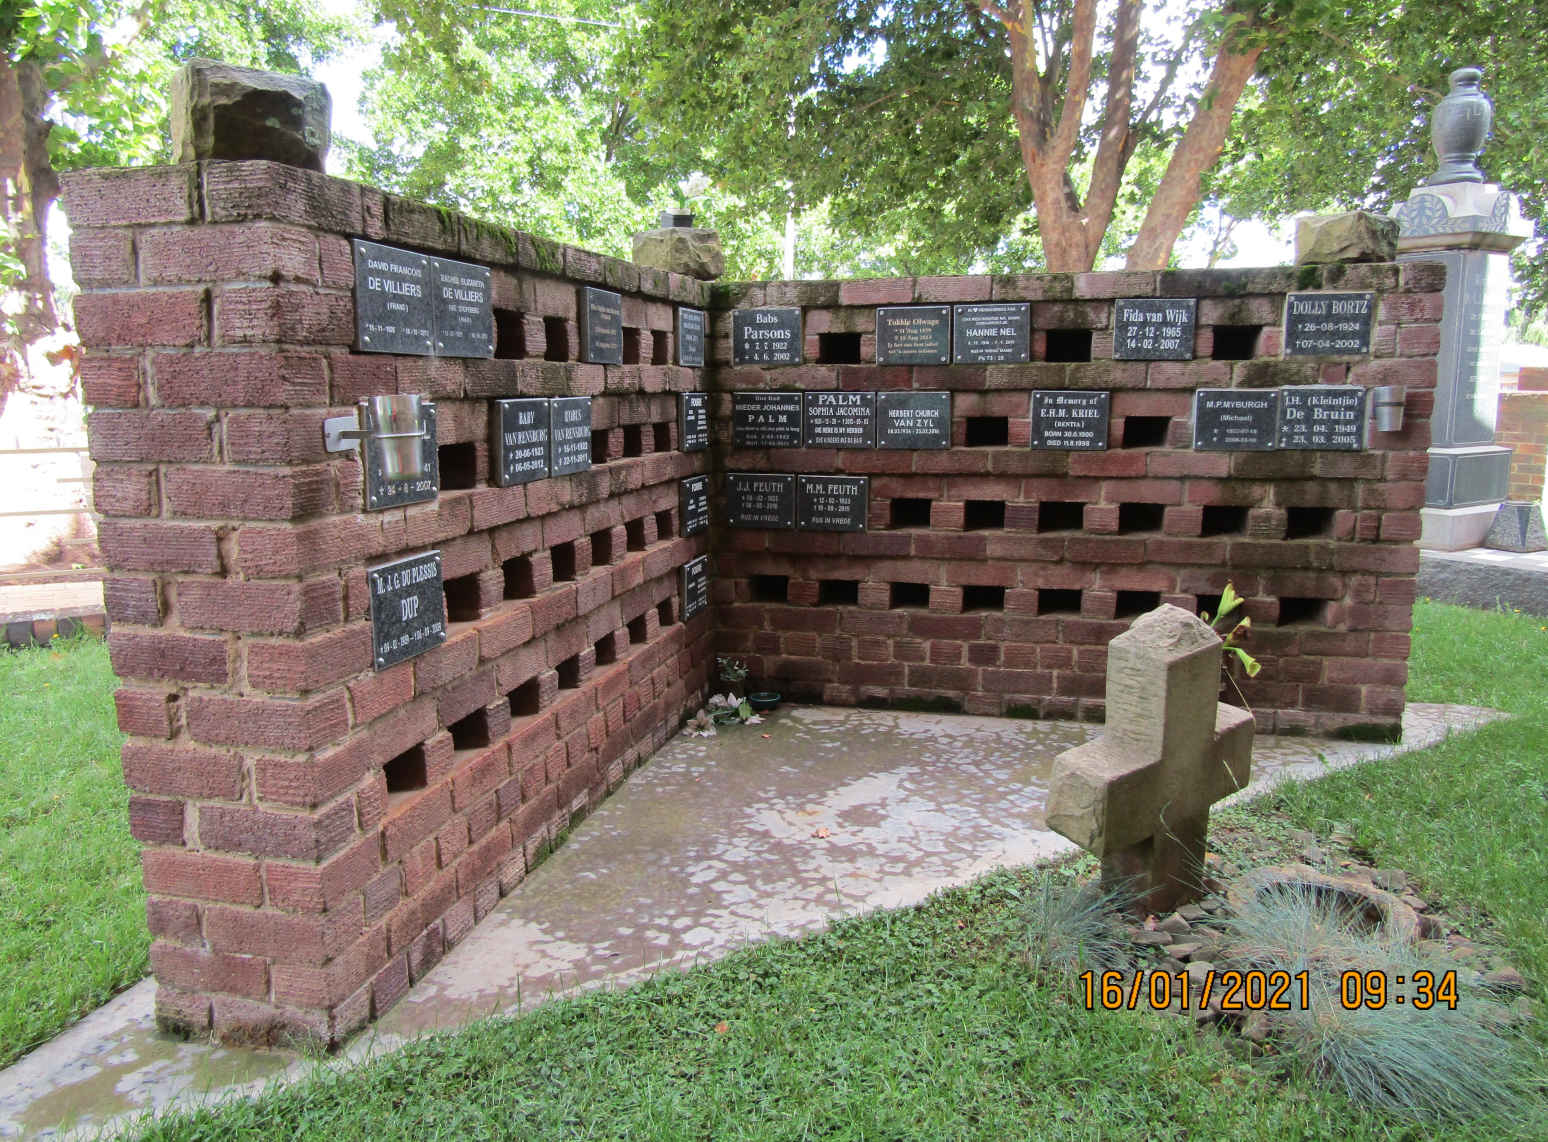 6. Oorsig van Gedenkmuur / Overview of Wall of Remembrance